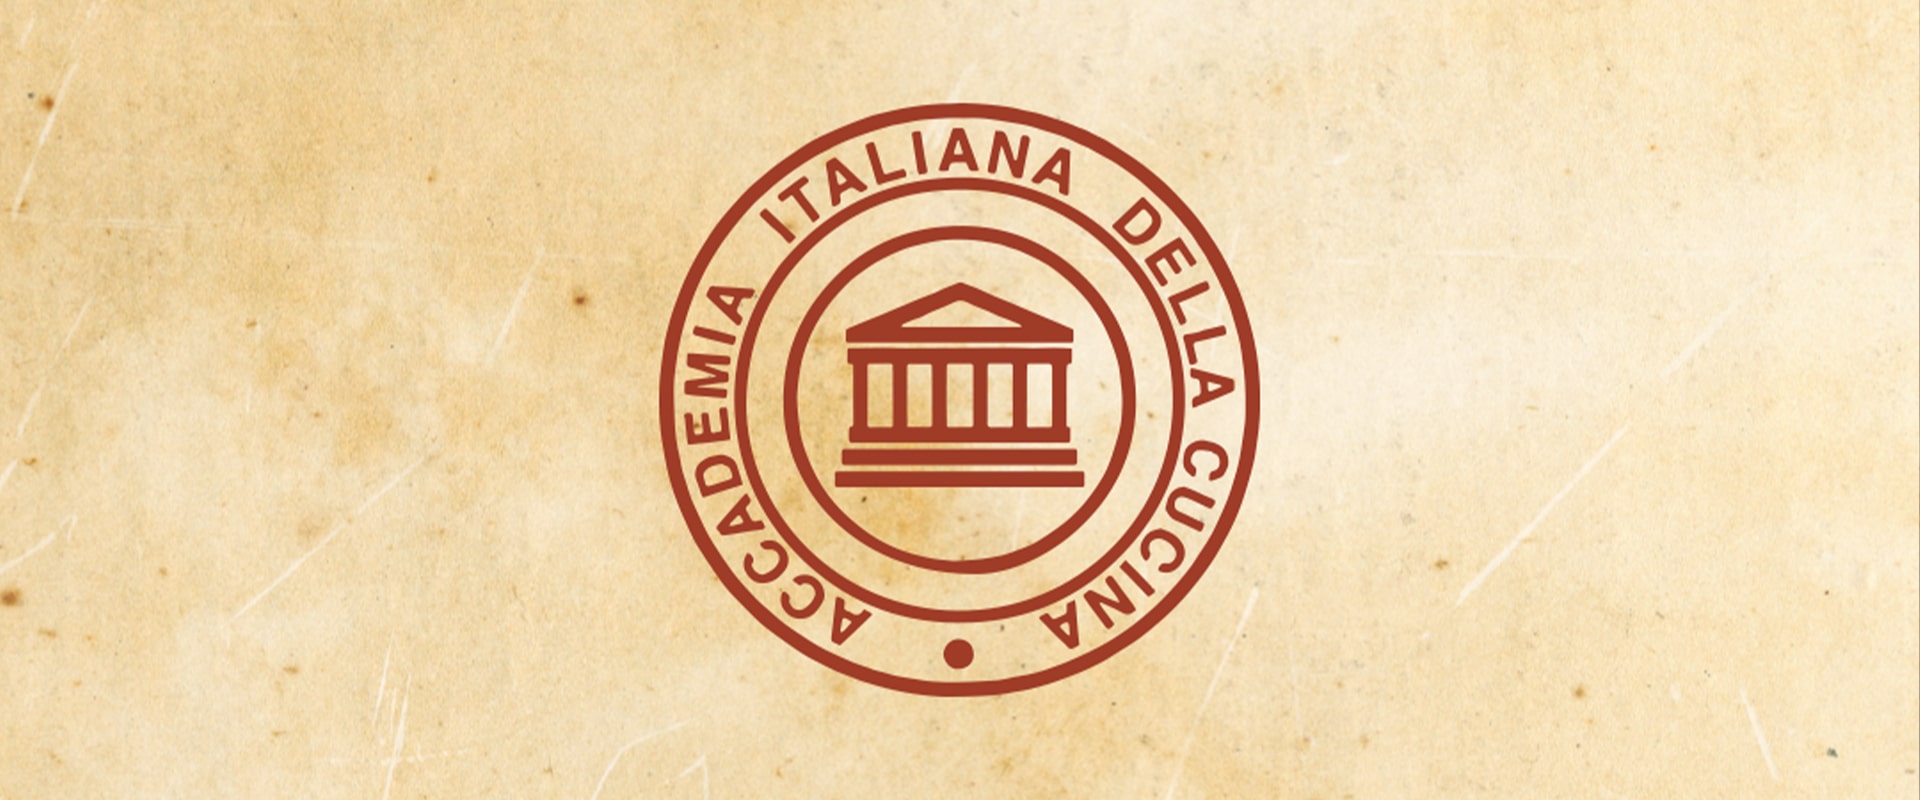 Domus-Comeliana-Pisa-Accademia-Italiana-della-Cucina-001-sito-min.jpg